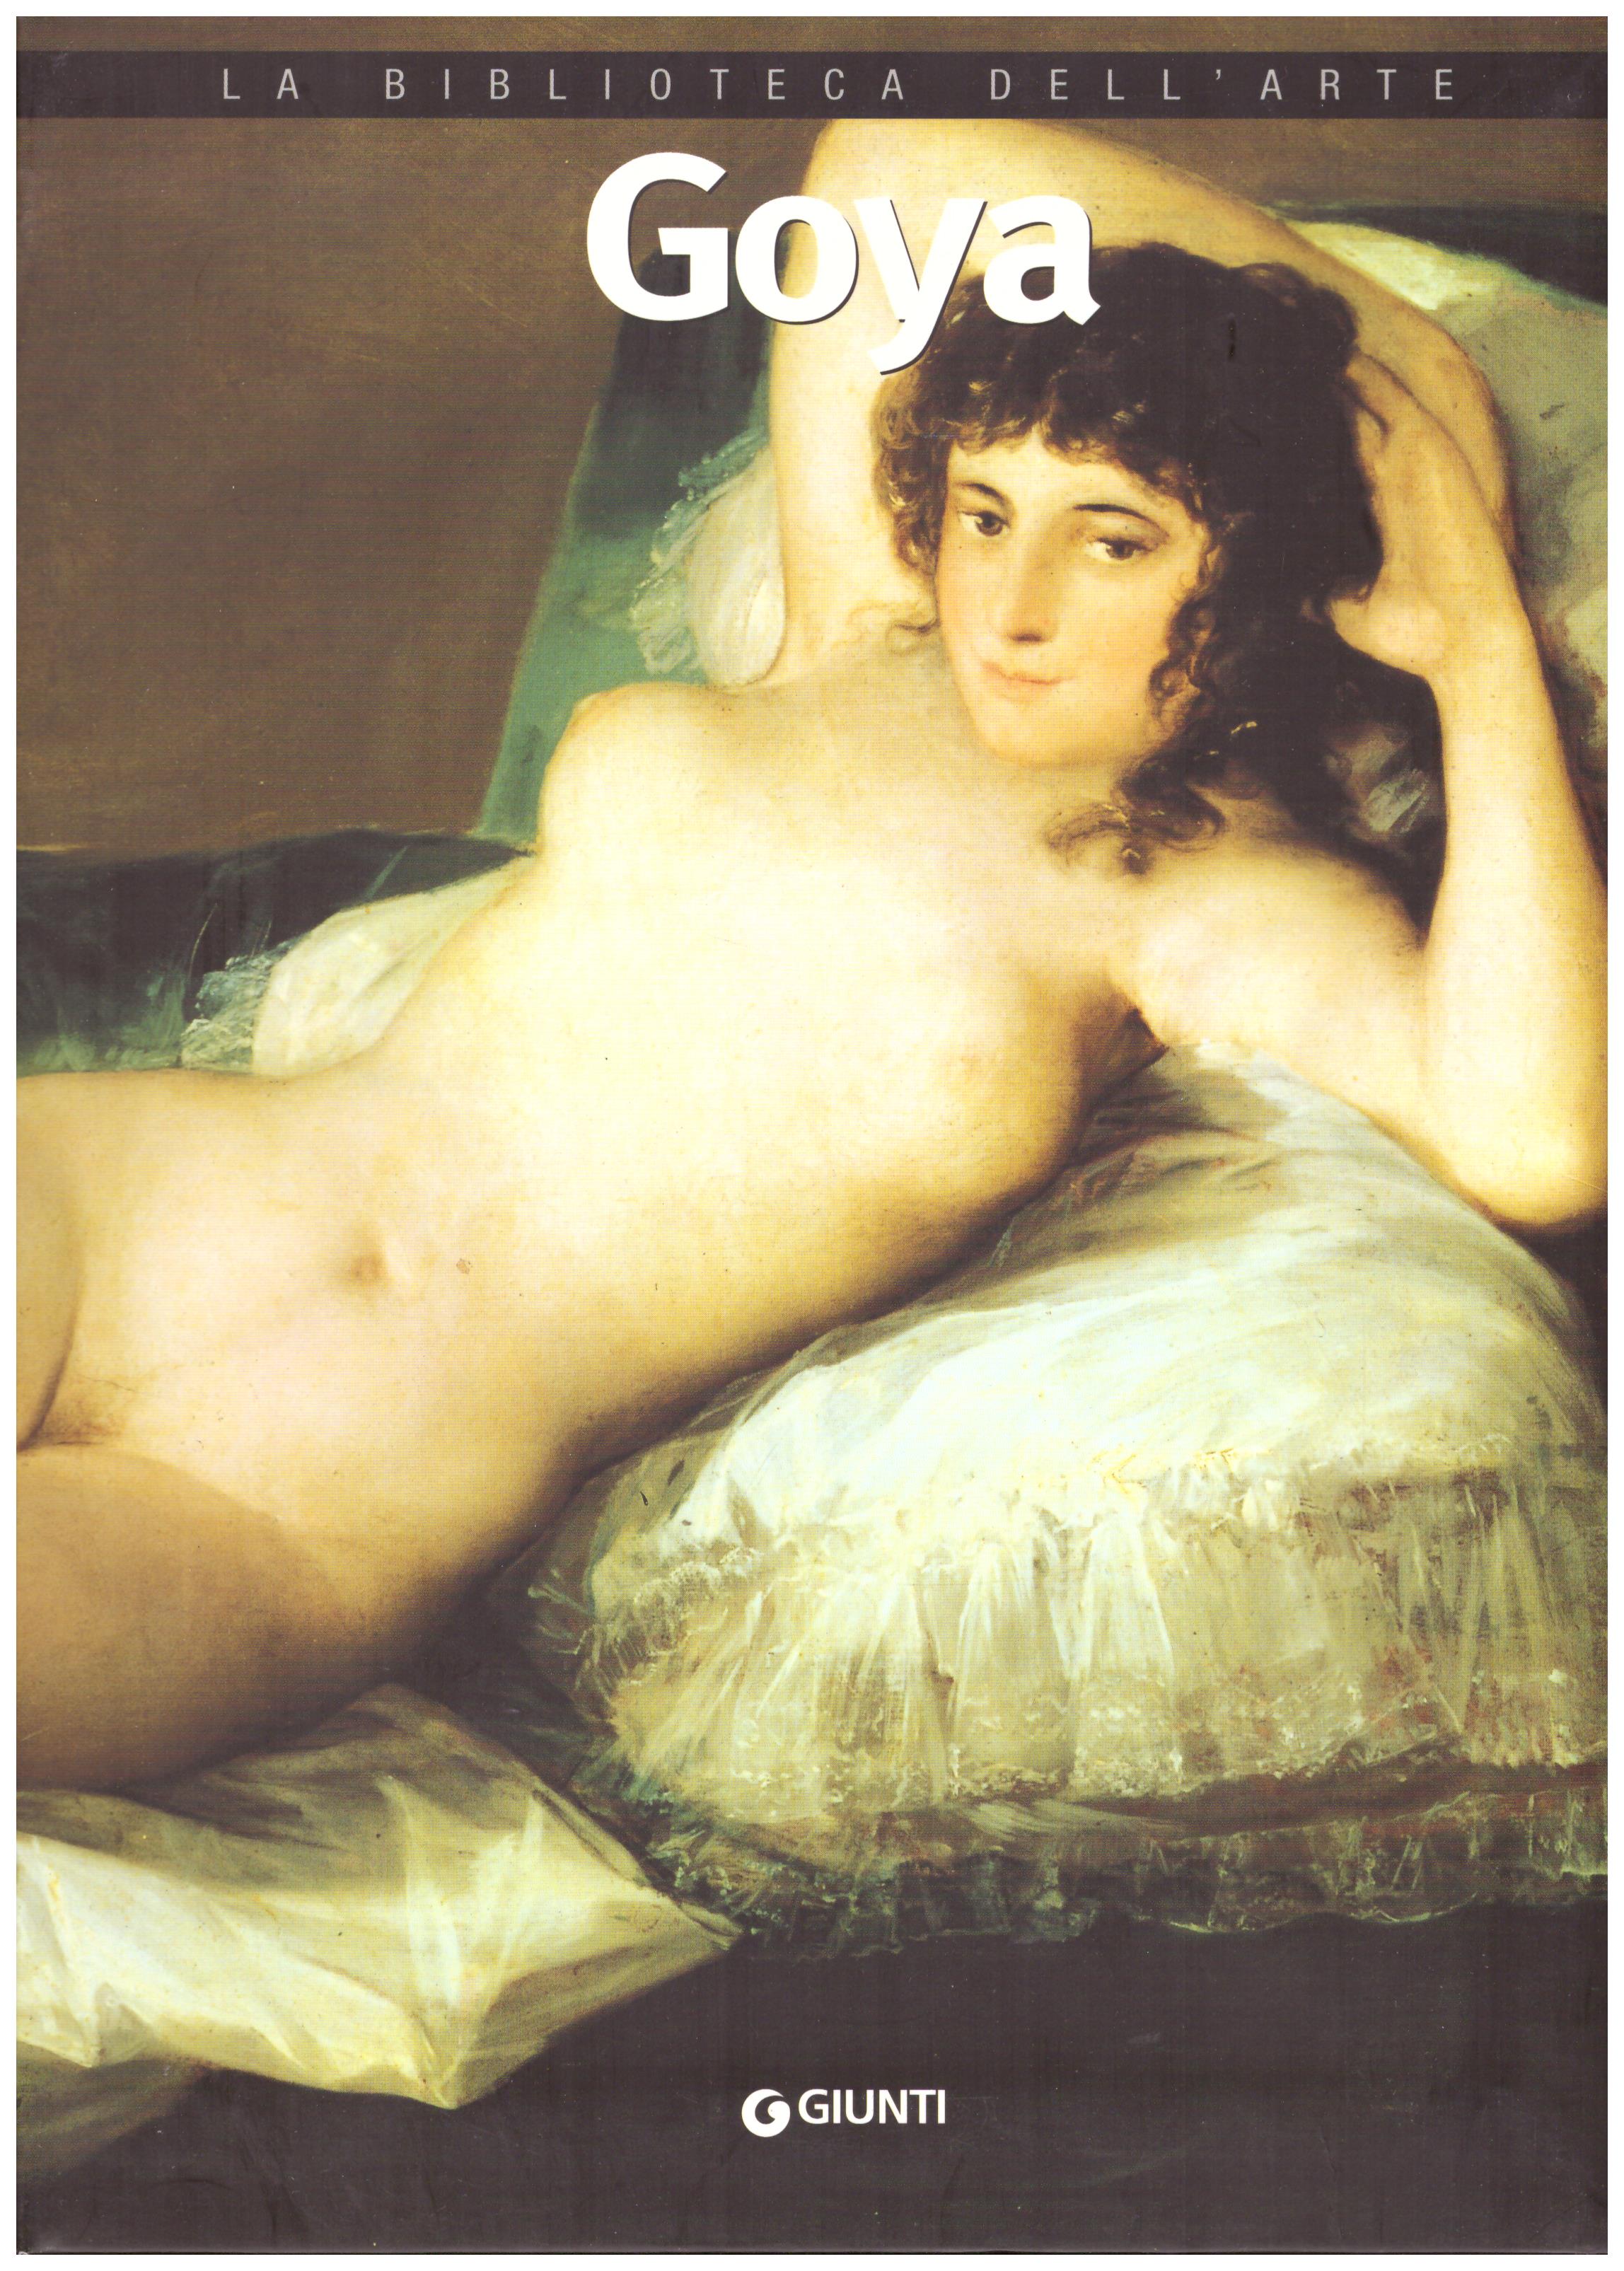 Titolo: La biblioteca dell'arte, Goya    Autore: AA.VV.      Editore: Giunti